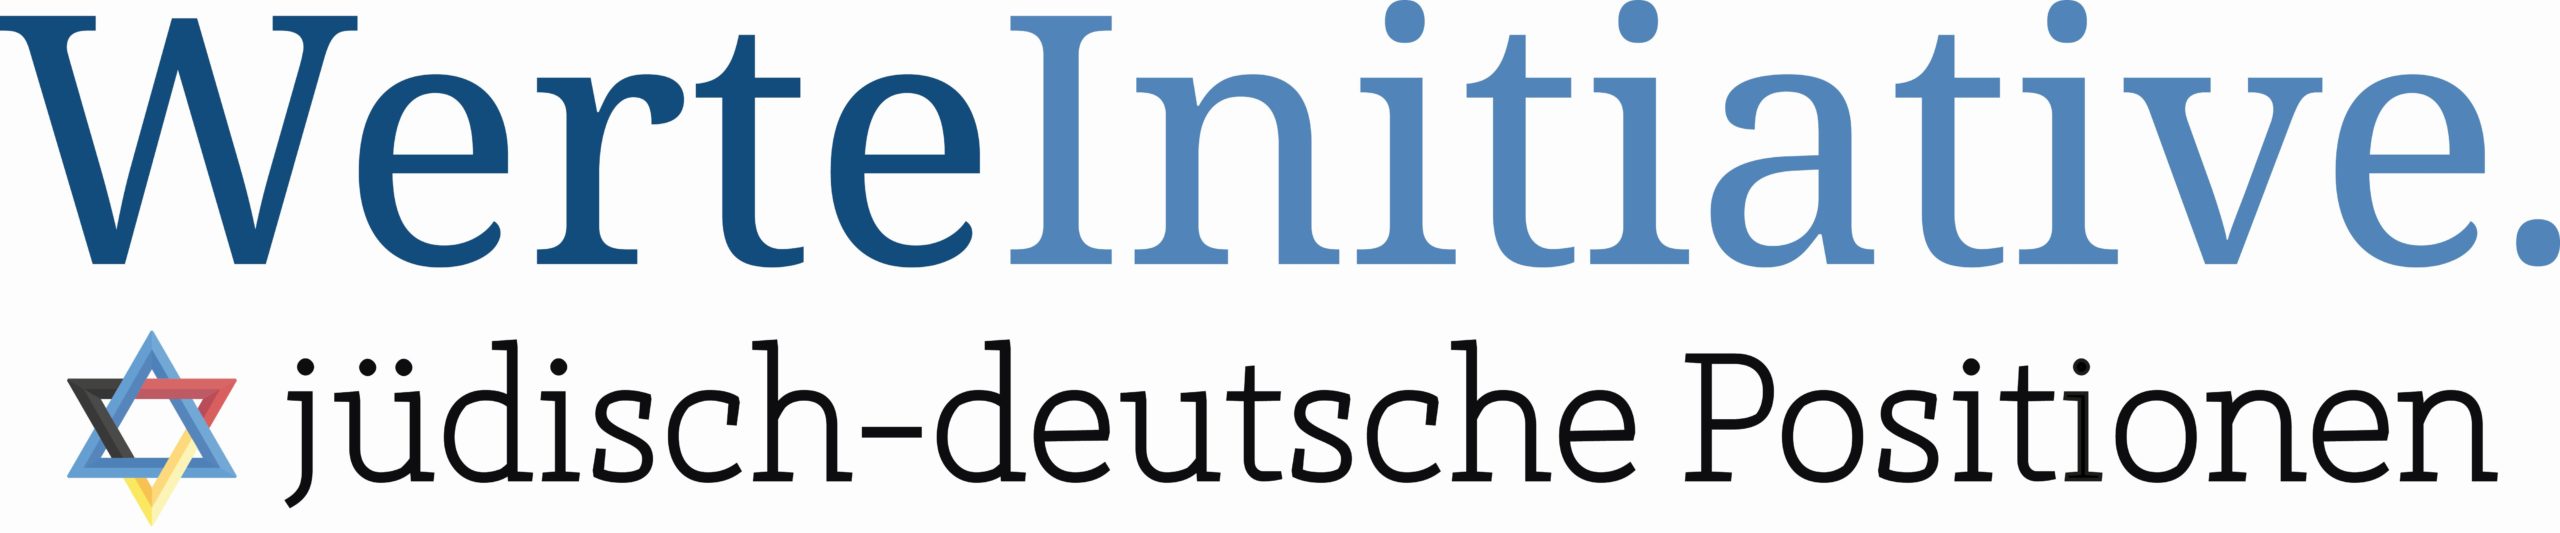 Logo der Werteinitiative, jüdisch-deutsche Positionen